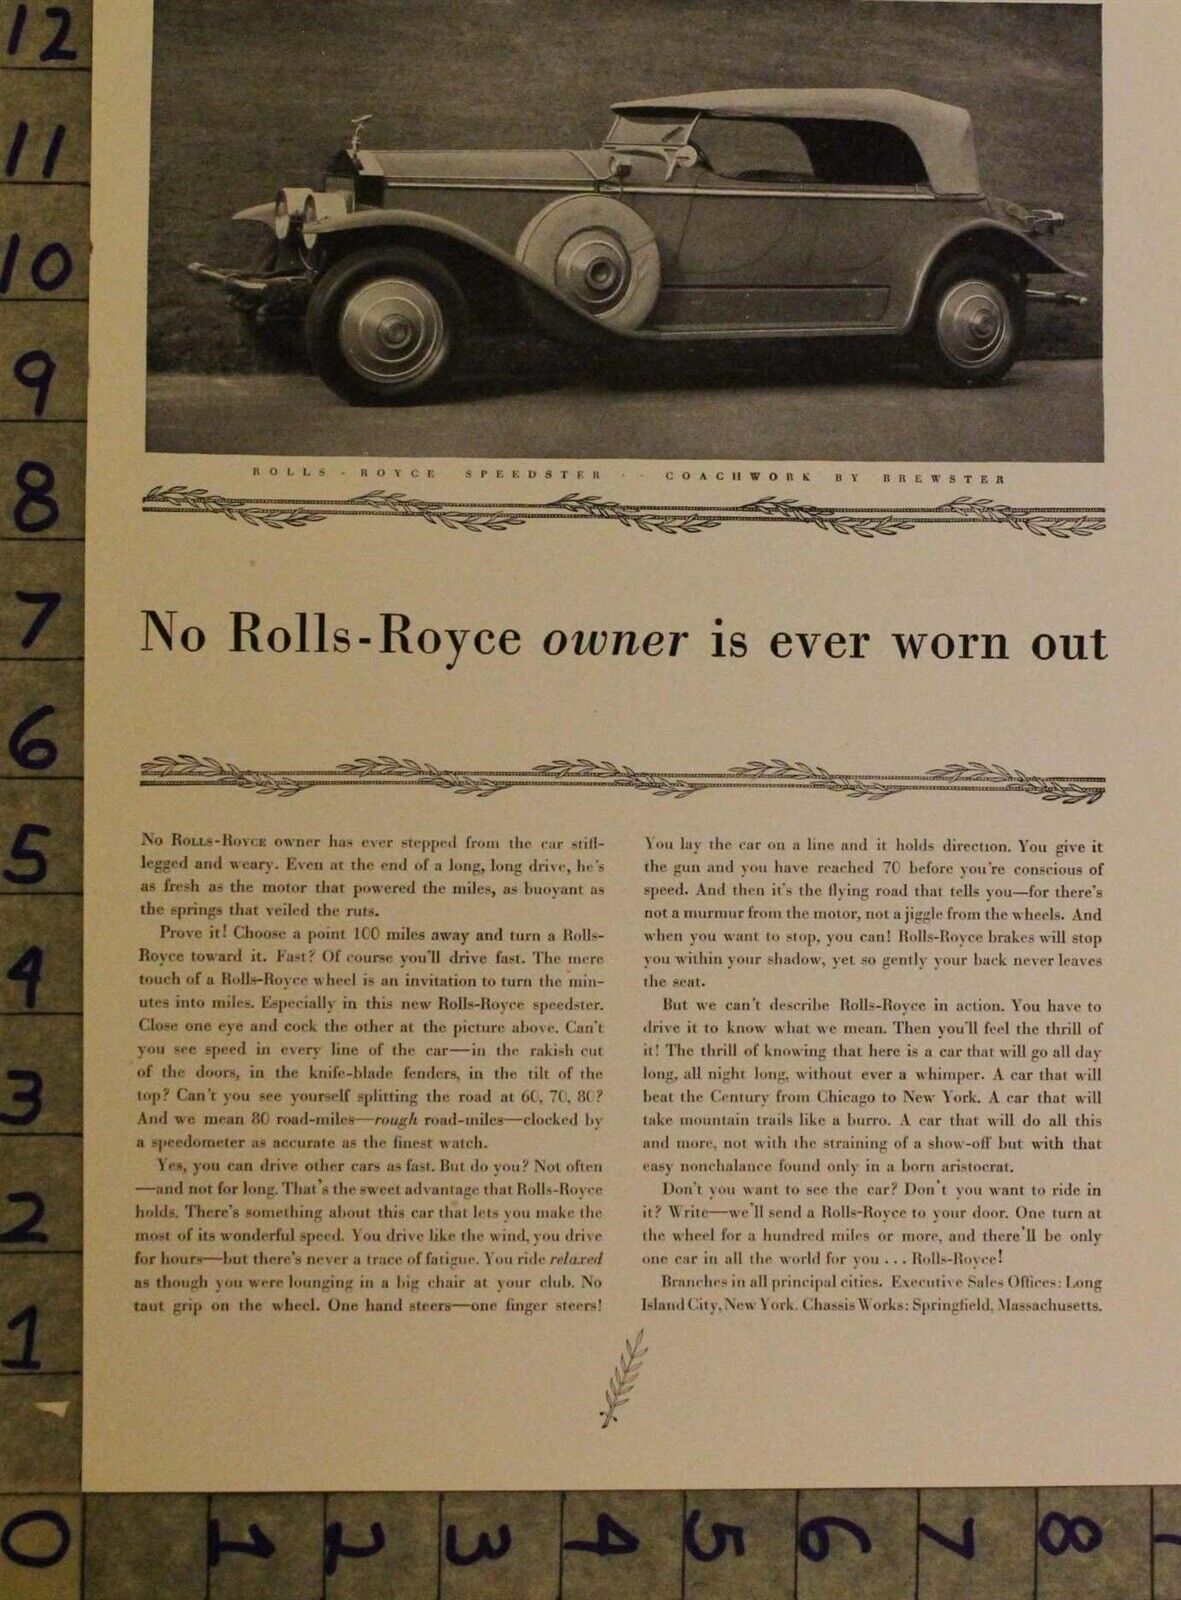 1929 ROLLS ROYCE SPEEDSTER 4-DOOR LUXURY BRITISH ENGLAND MOTOR CAR AUTO AD UO56